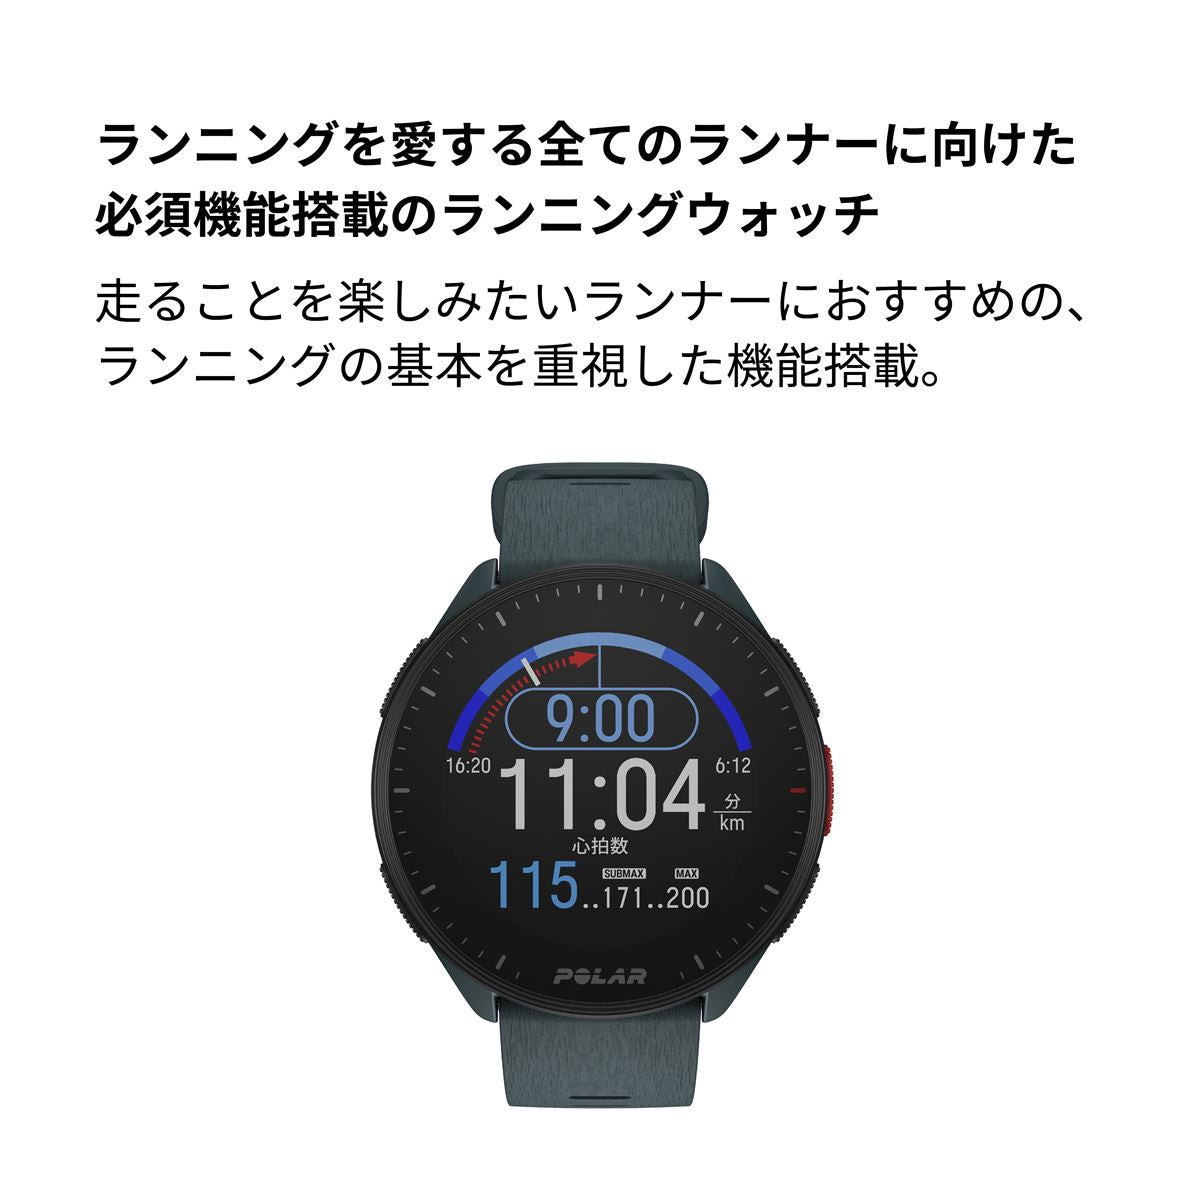 ポラール POLAR PACER スマートウォッチ GPS 心拍 トレーニング ランニング マラソン 腕時計 ぺーサー ディープグリーン S-L 900102176 日本正規品